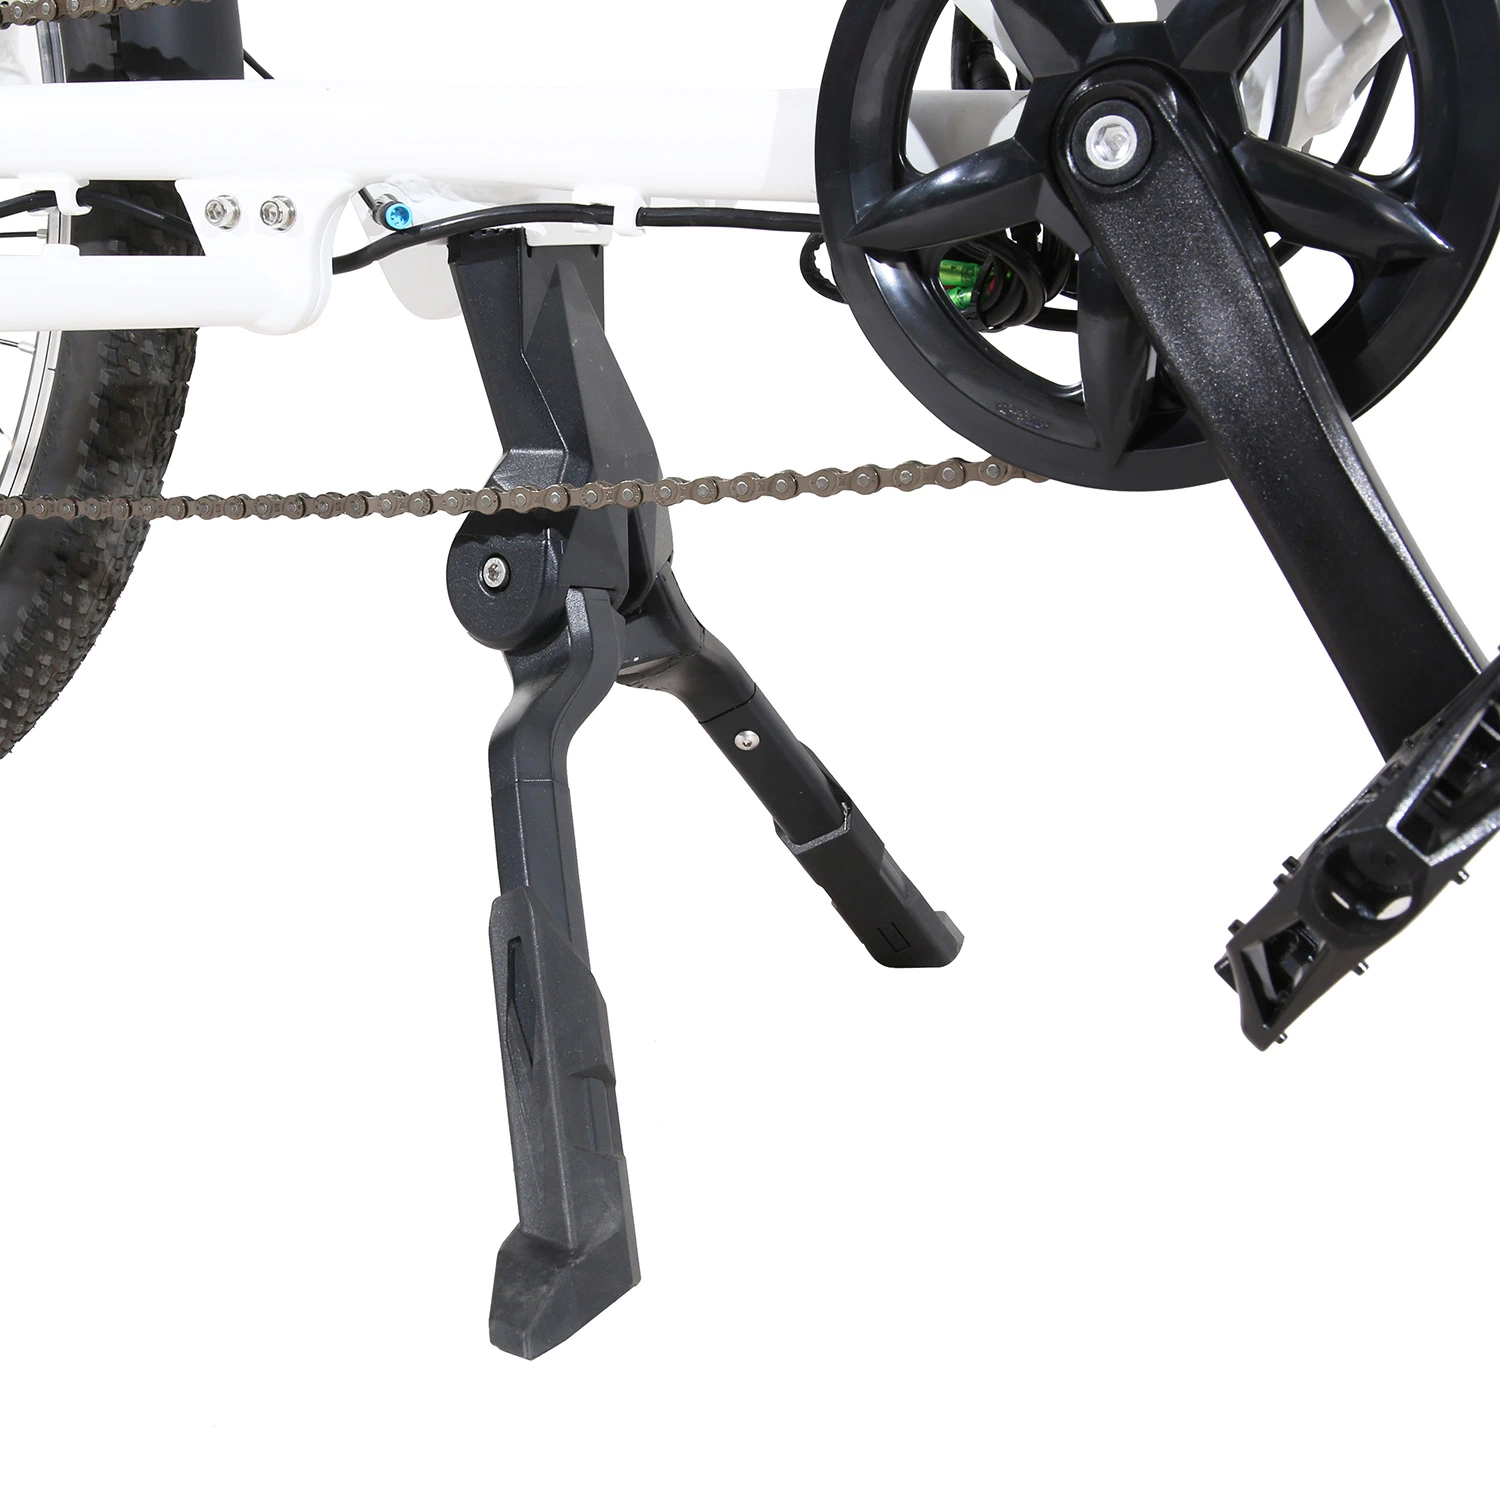 Qualidade de alta carga Longtail bicicleta eléctrica com homologação CE